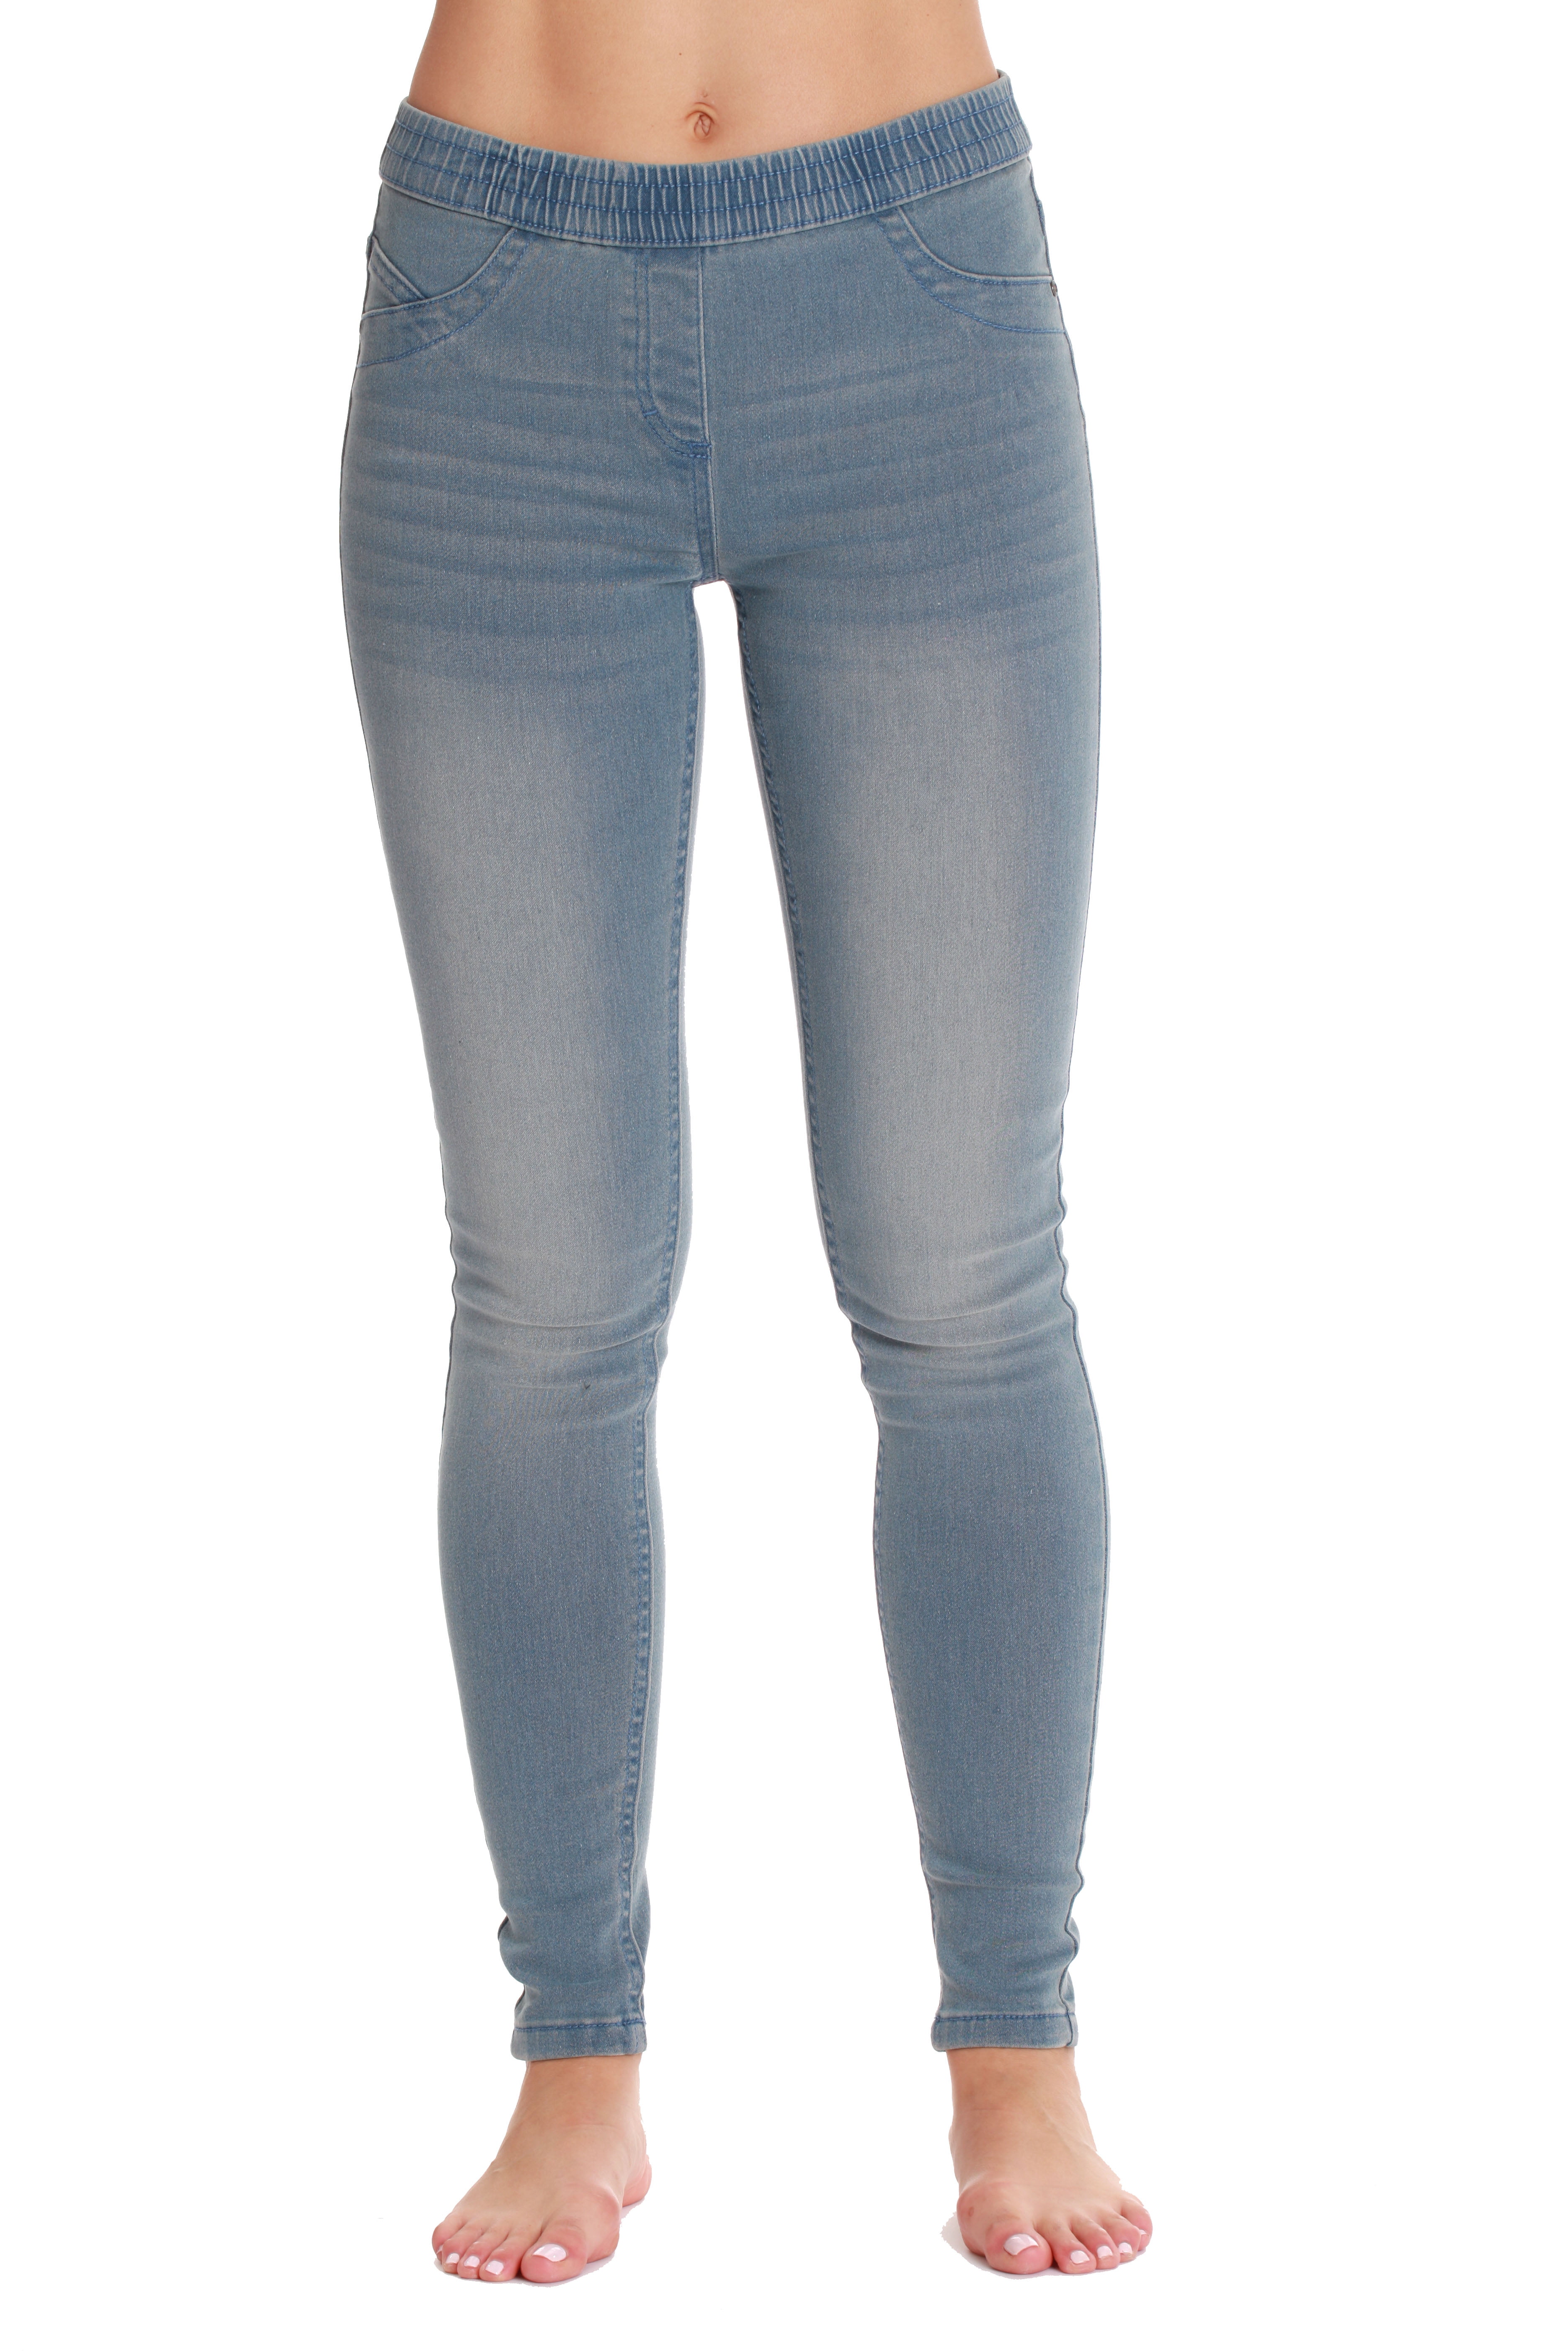 light blue jean leggings